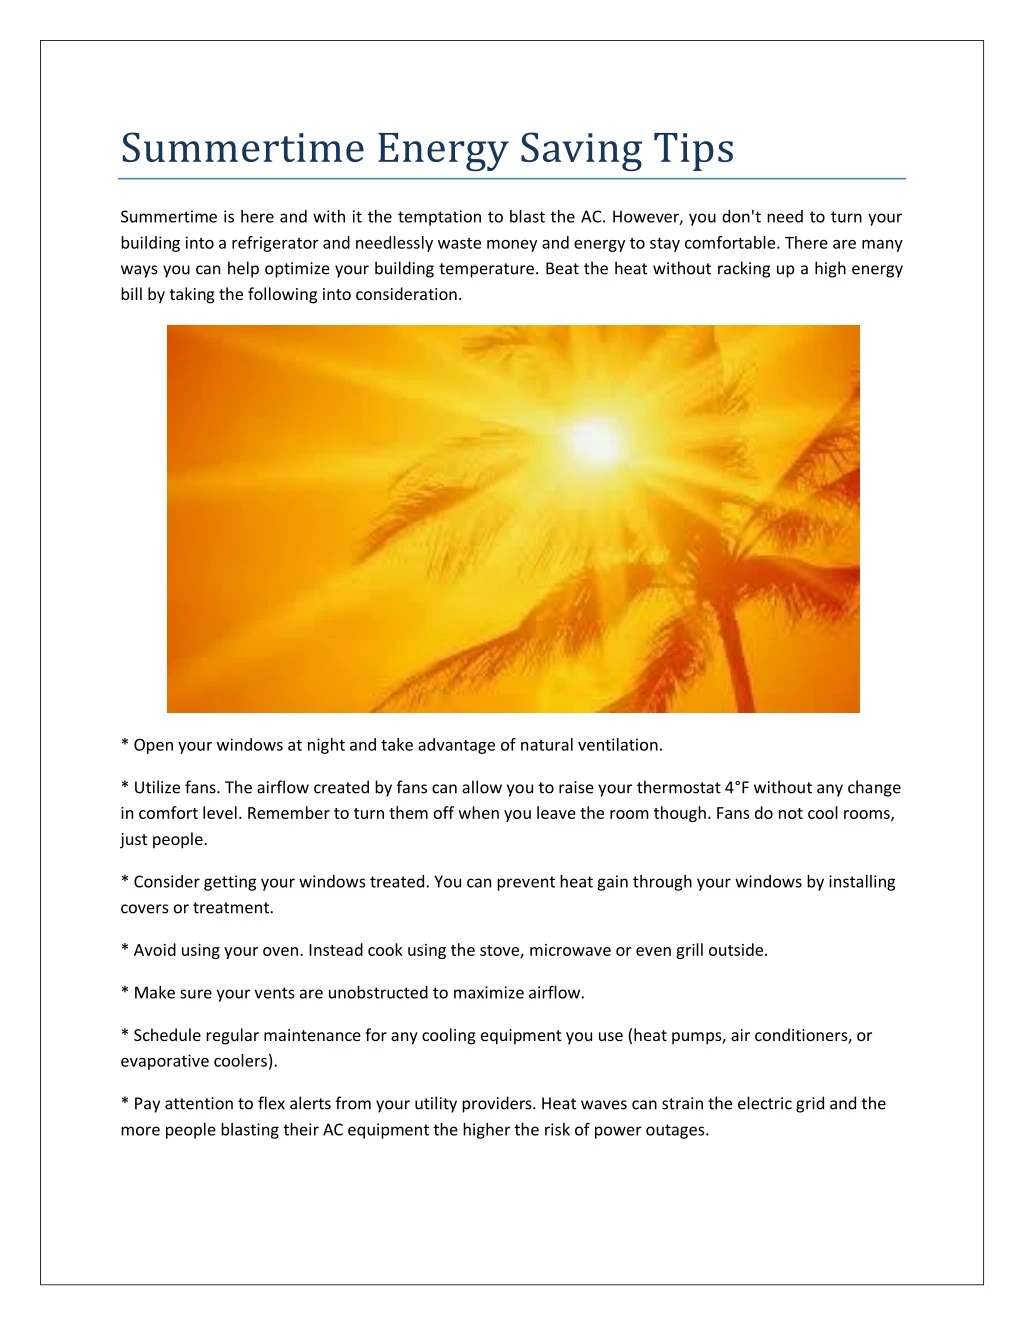 summertime energy saving tips